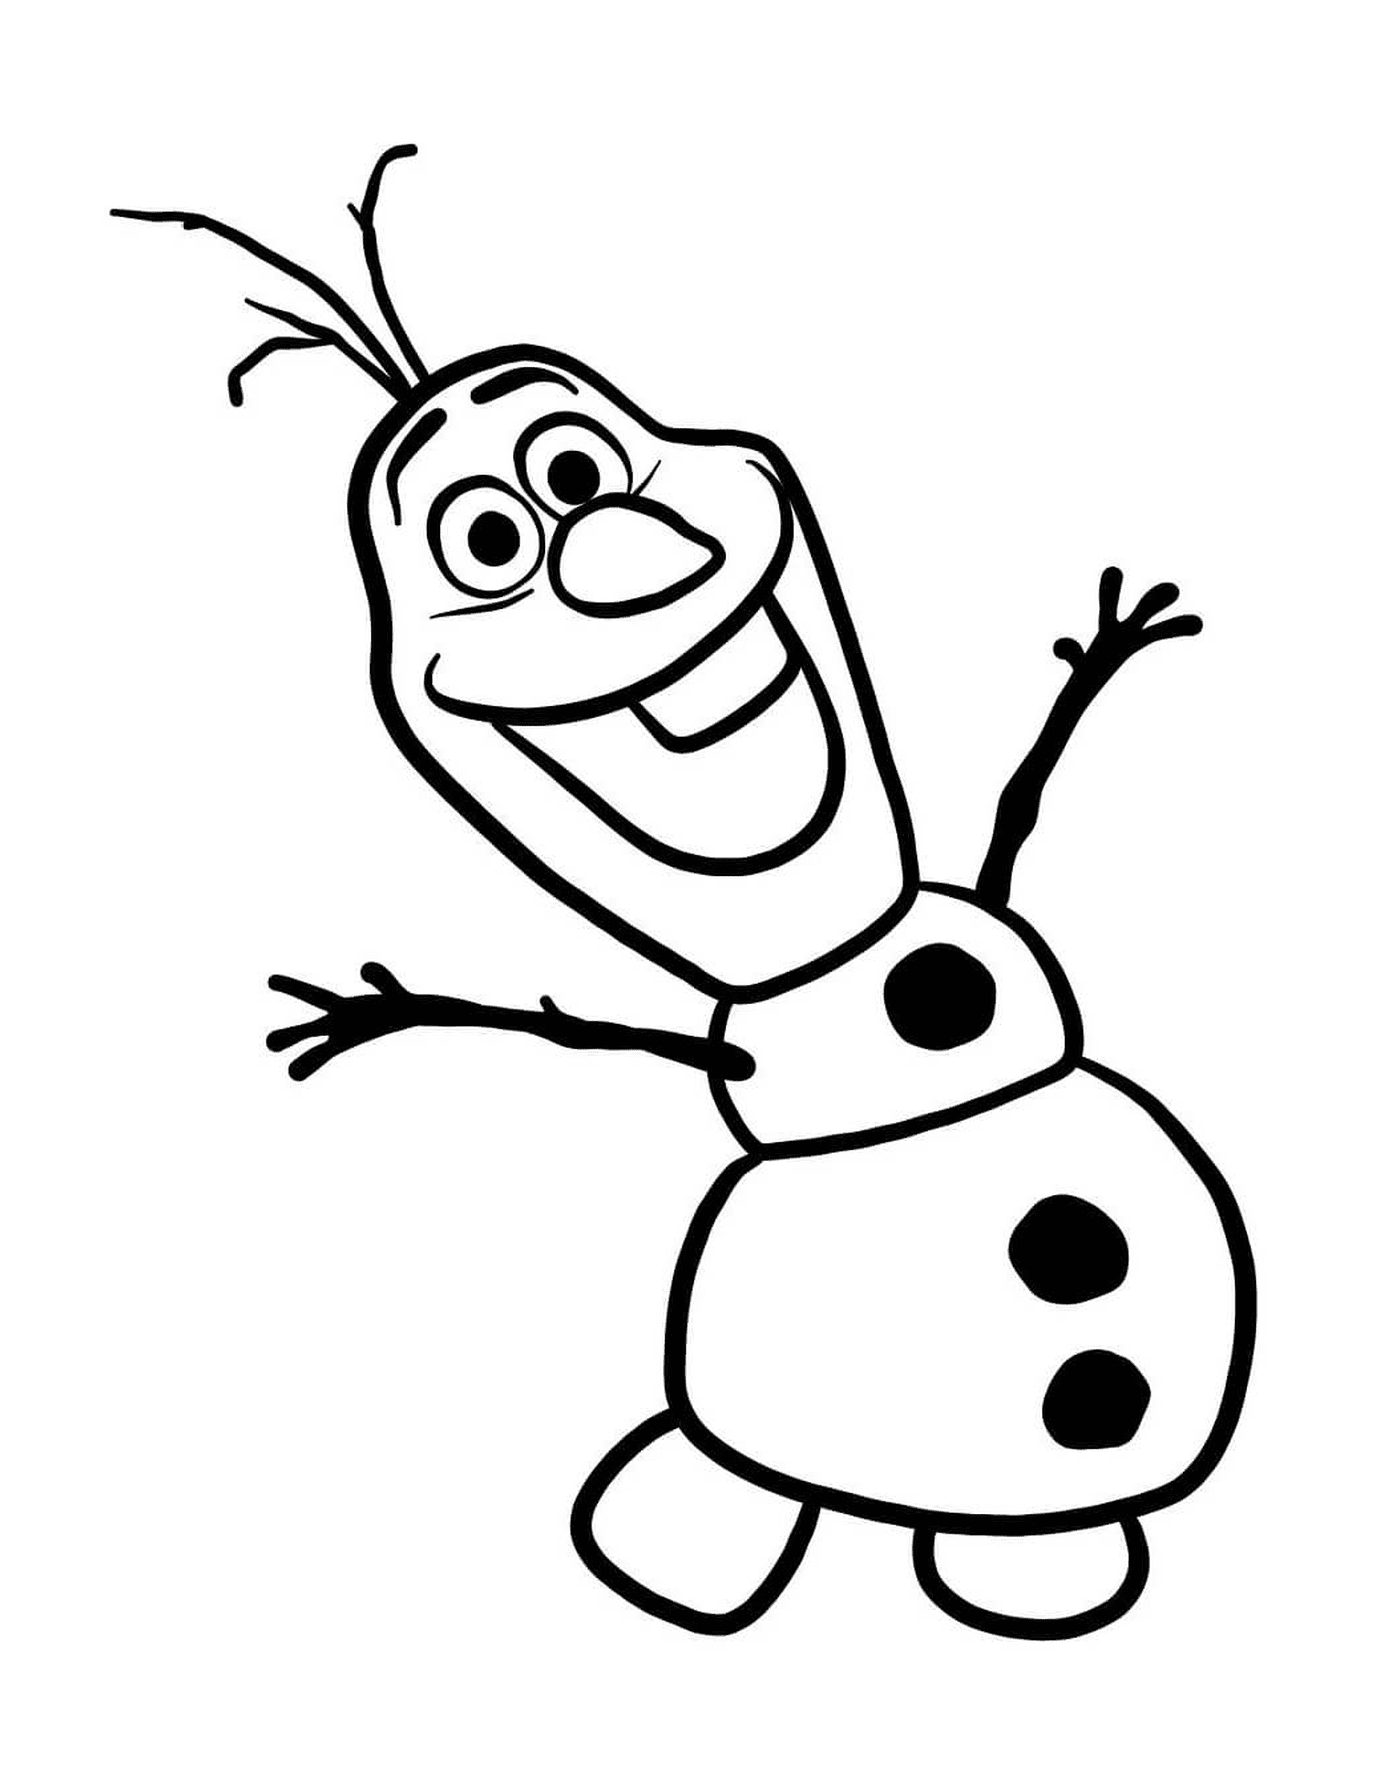  Olaf, il pupazzo di neve creato da Elsa 